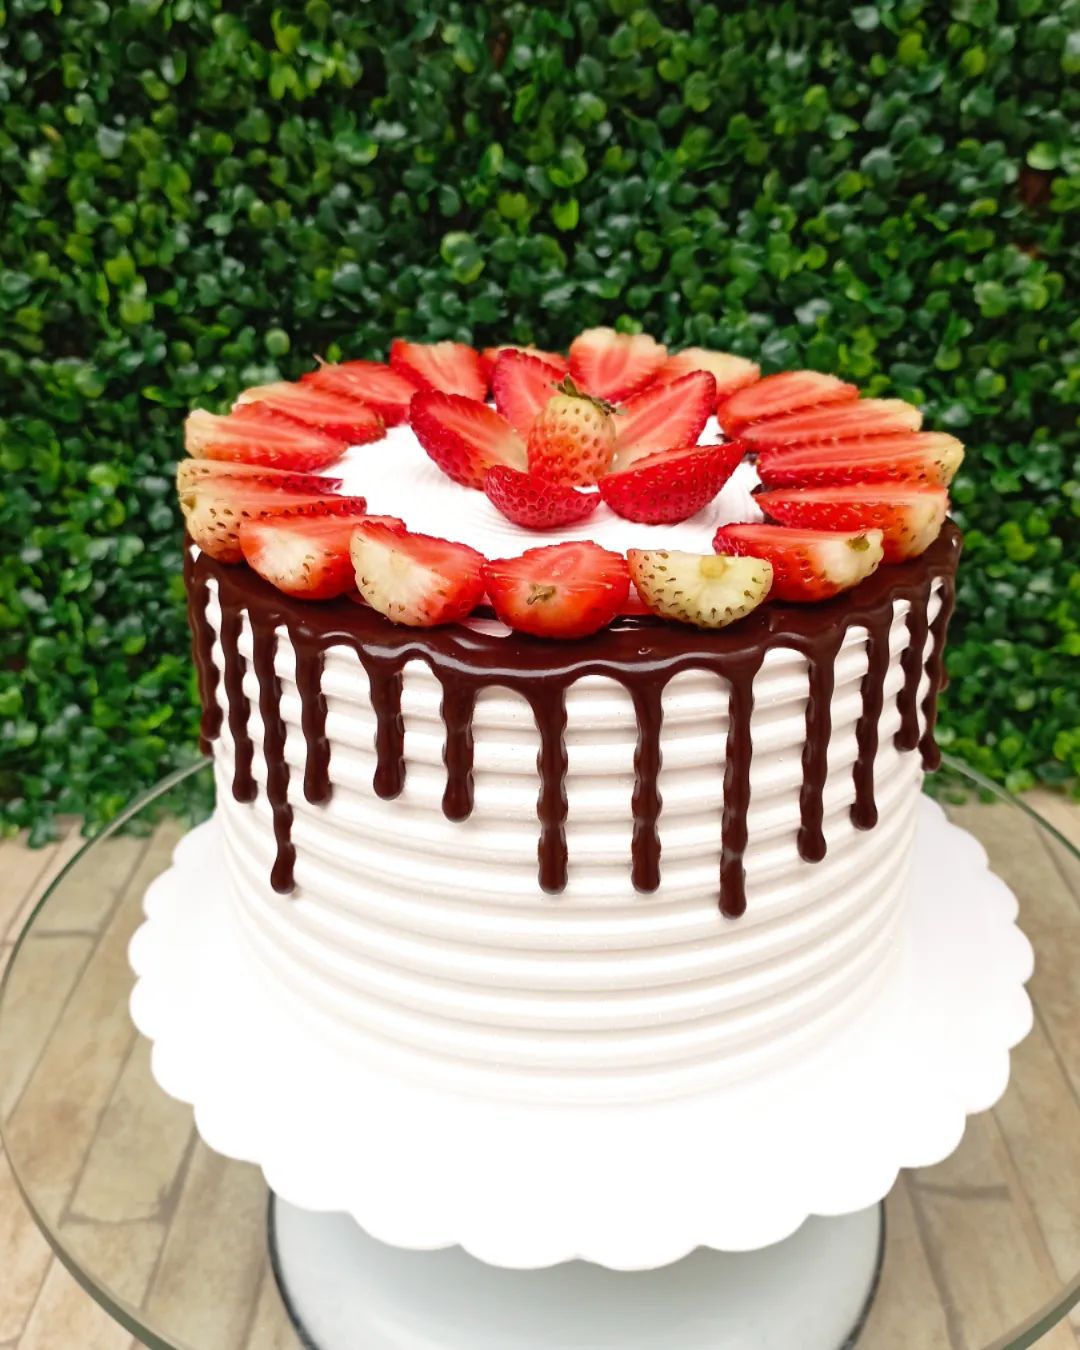 Mêsversário: inspirações de bolo para a sua festa